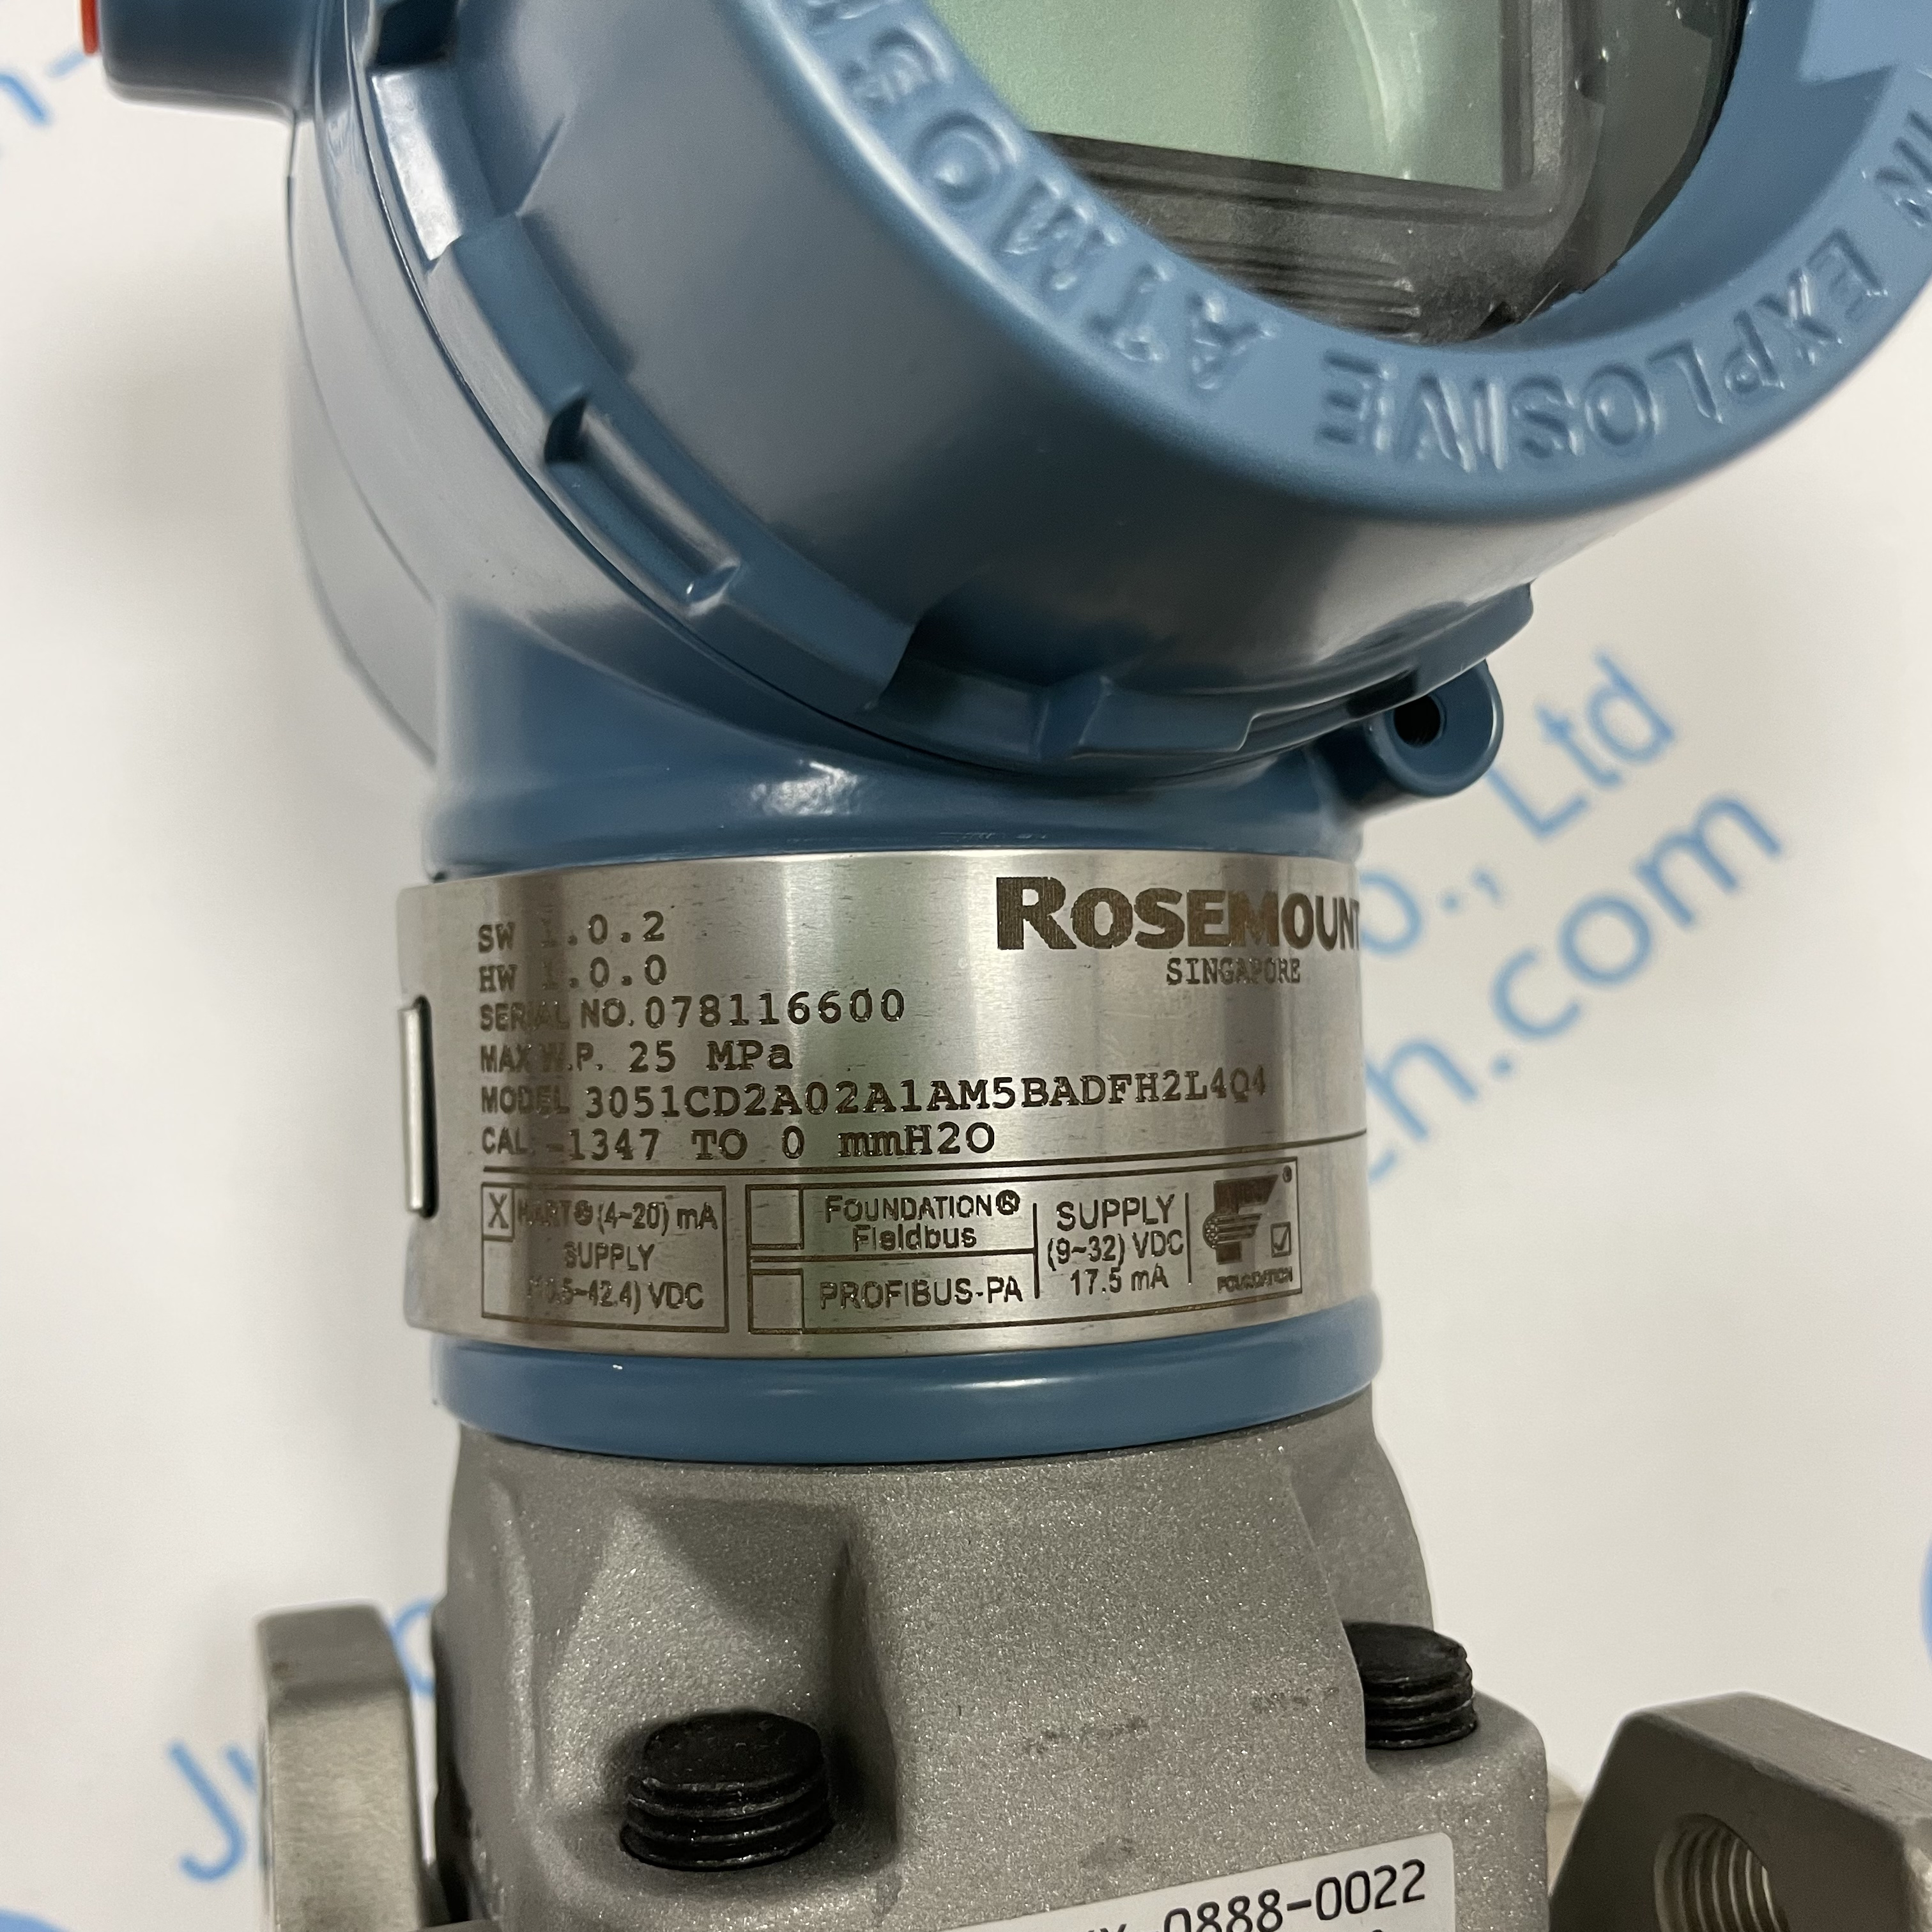 Rosemount pressure transmitter 3051CD2A02A1AM5BADFH2L4Q4